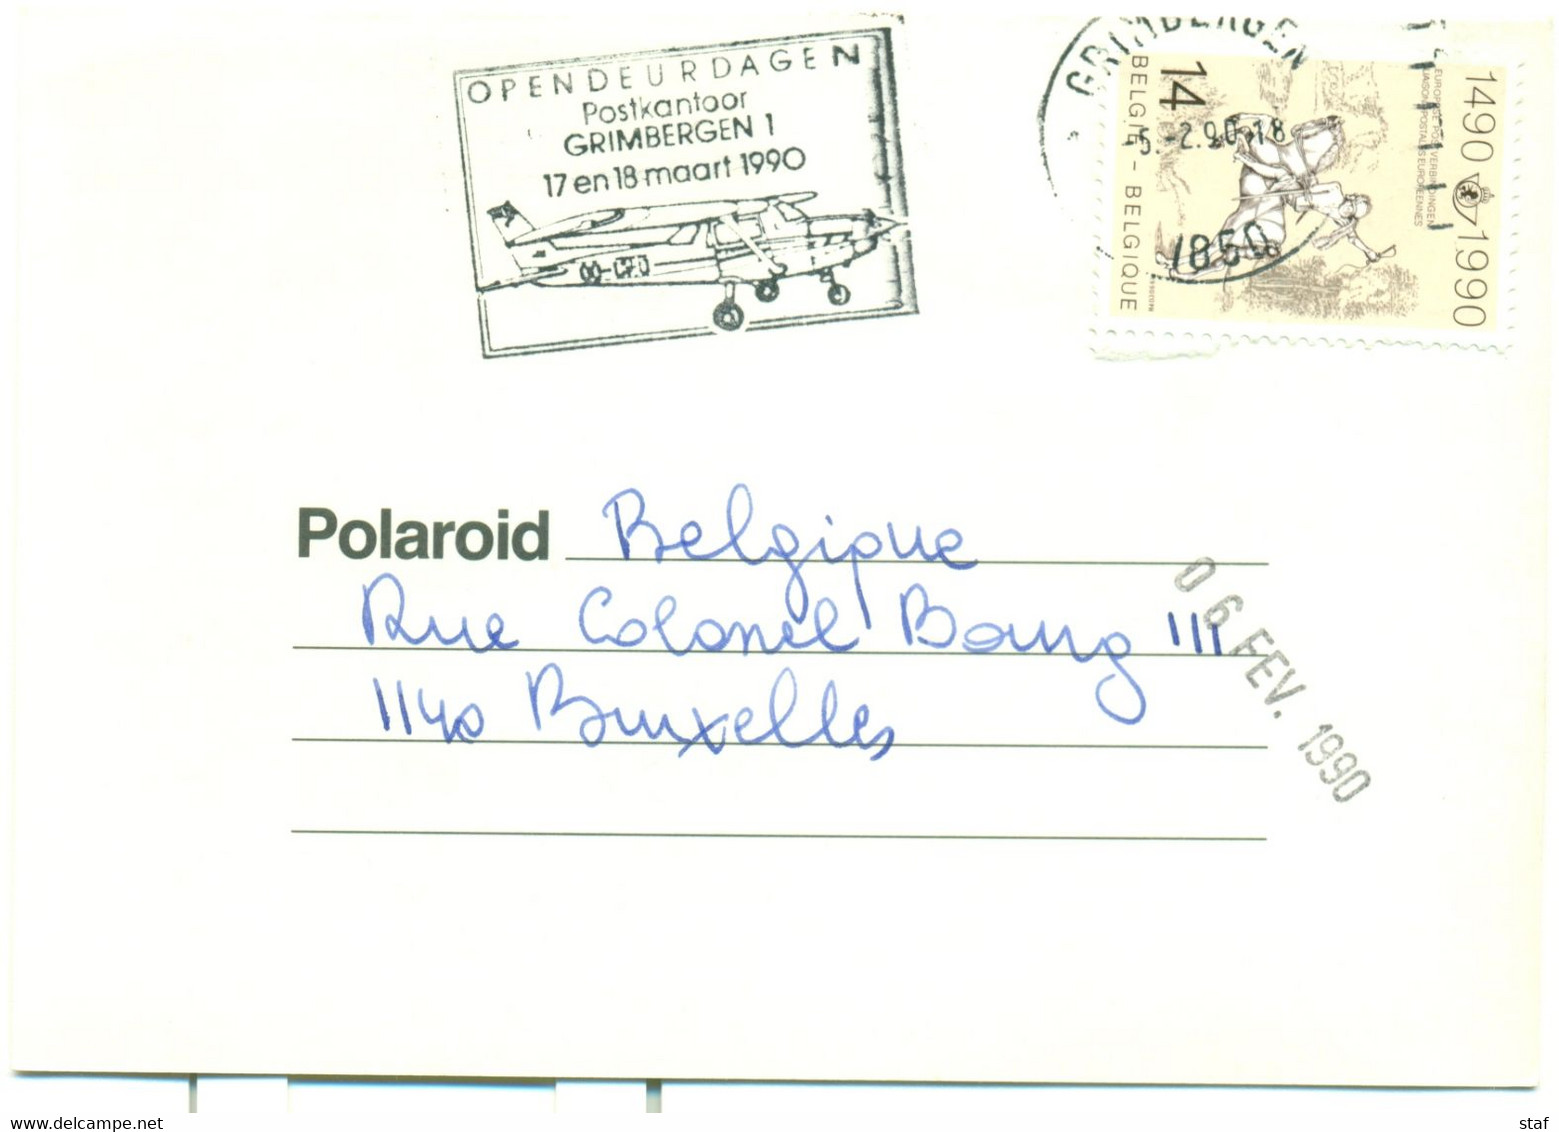 Opendeurdagen Postkantoor Grimbergen 1  17 En 18 Maart 1990 - Werbestempel